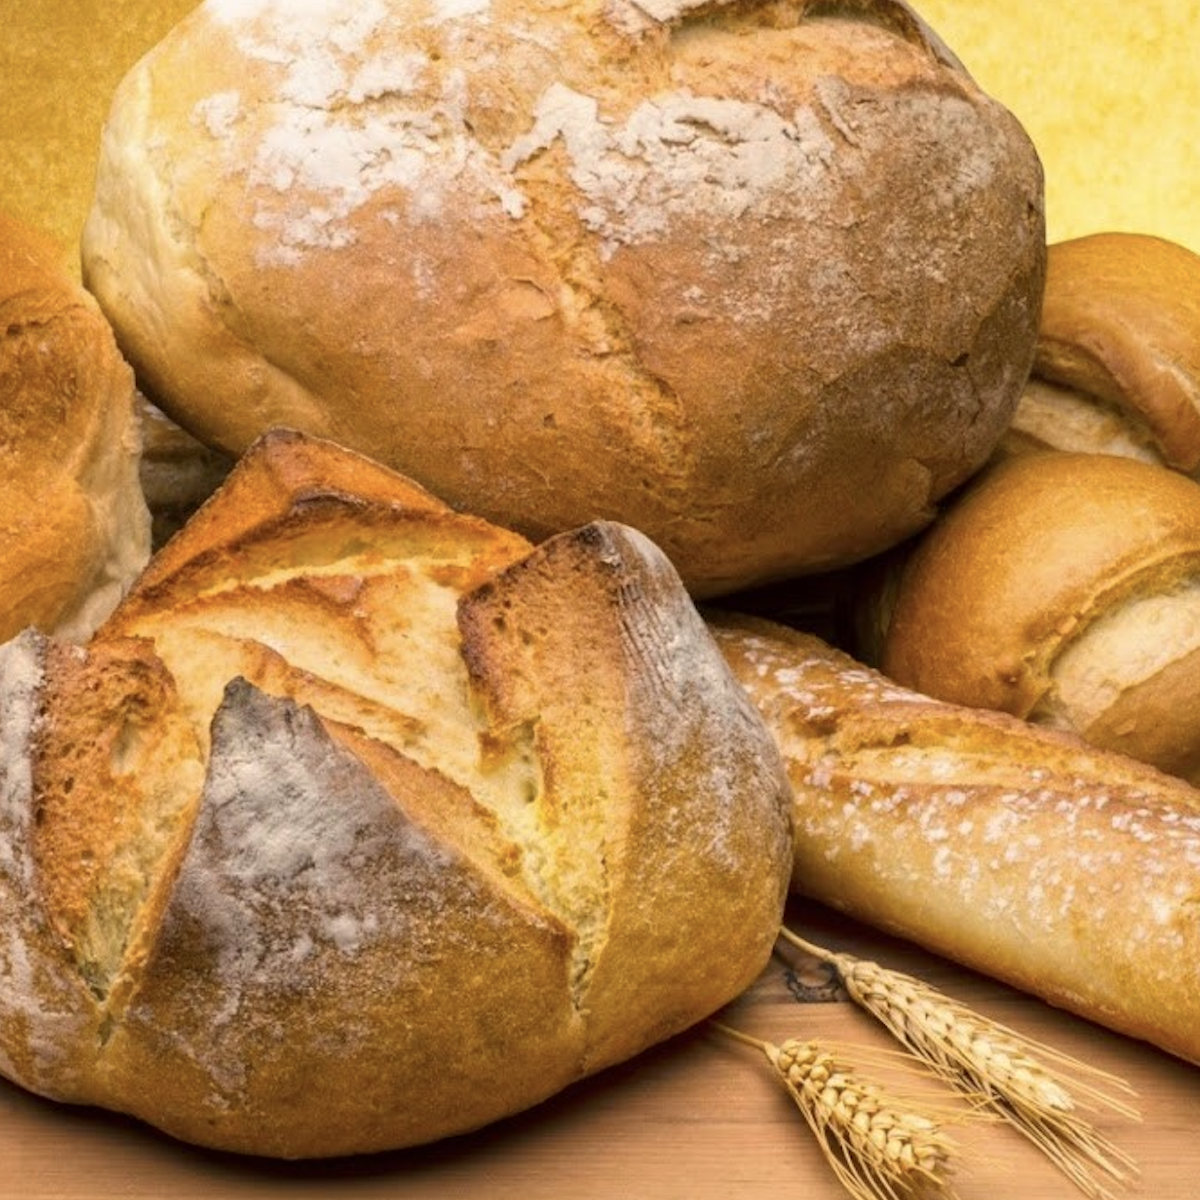 HomeBread - La macchina per il pane fatto in casa - Cs, CAREservice